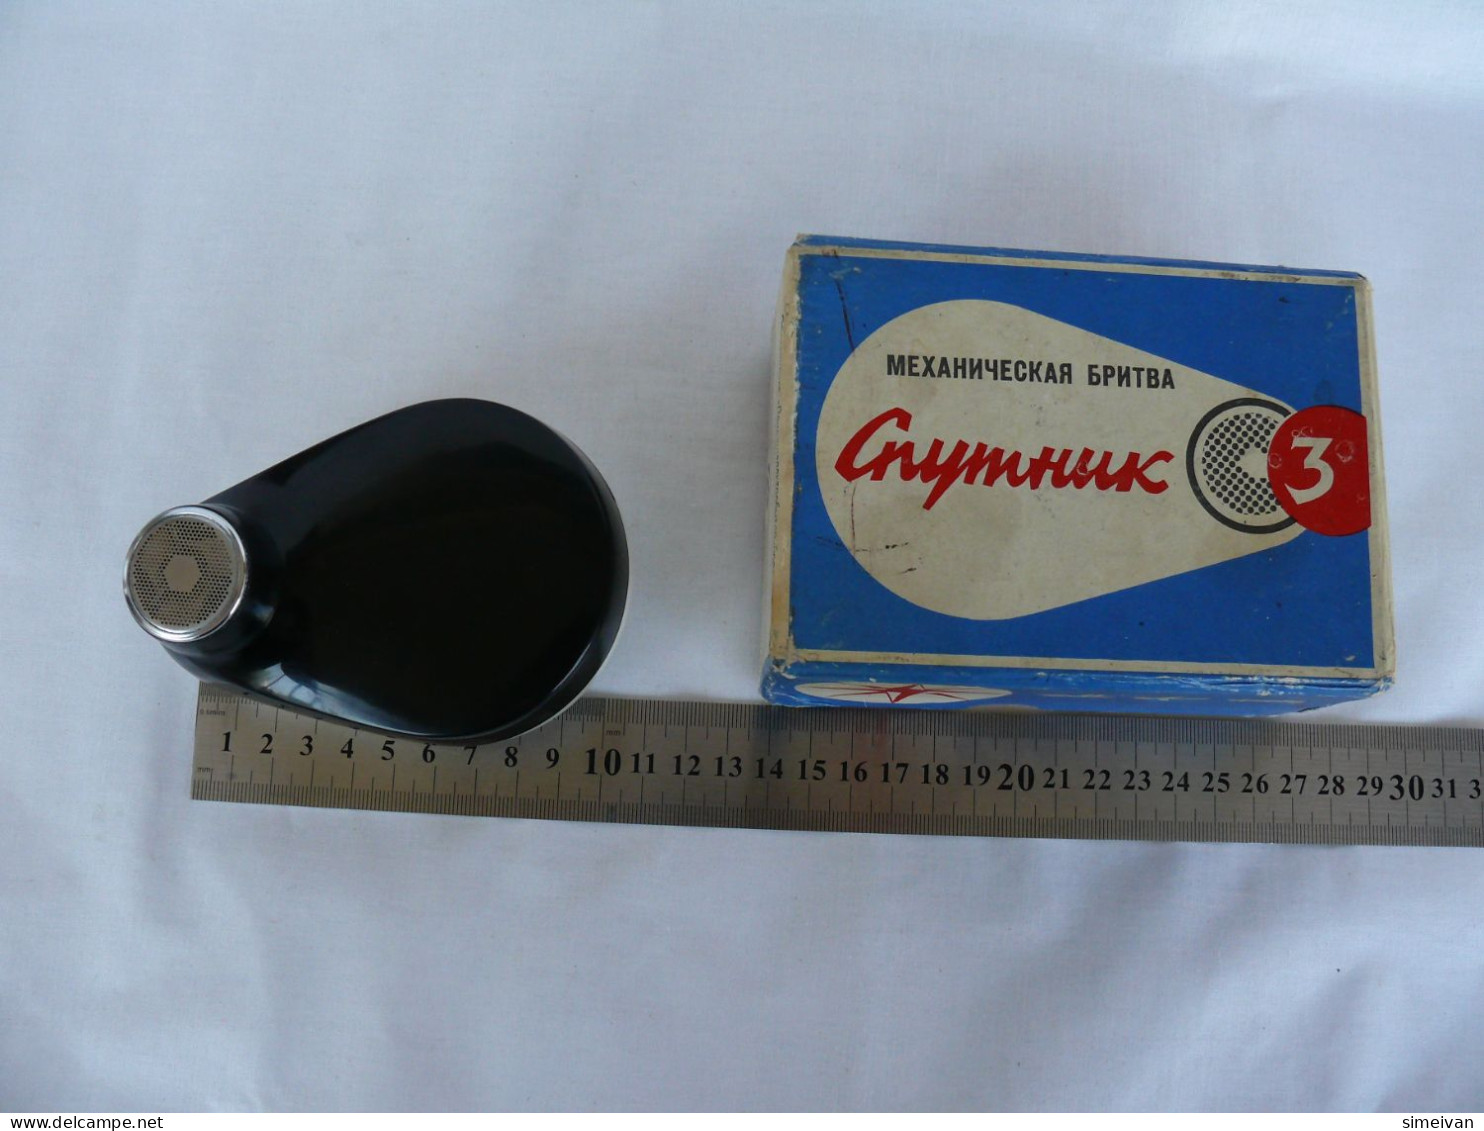 Vintage Russian Mechanical Razor Shaver Sputnik 3 Leningrad Bakelite USSR #2104